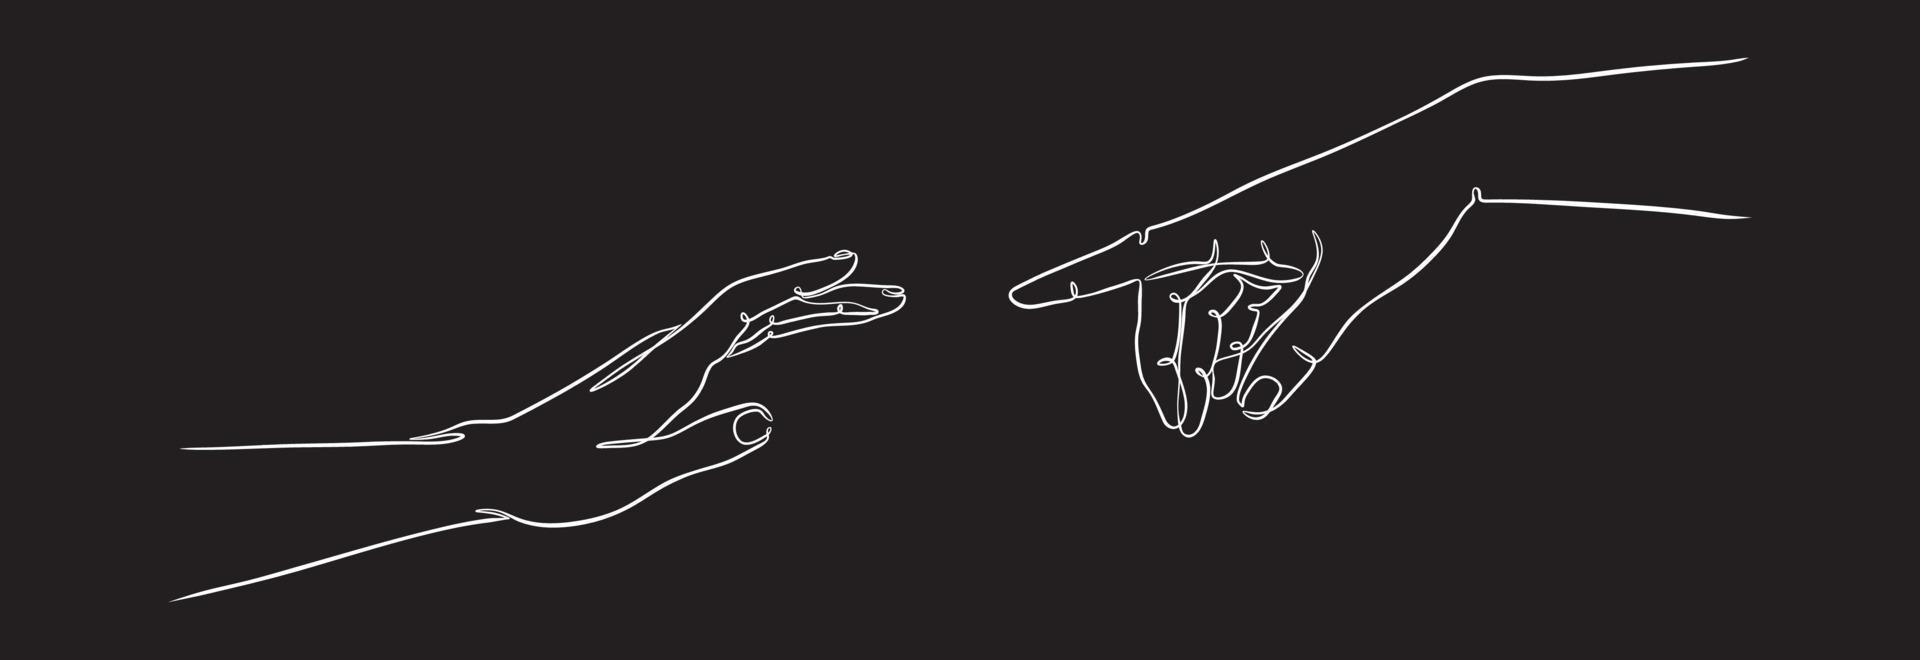 due mani che raggiungono una linea contigua in un'illustrazione vettoriale di sfondo nero